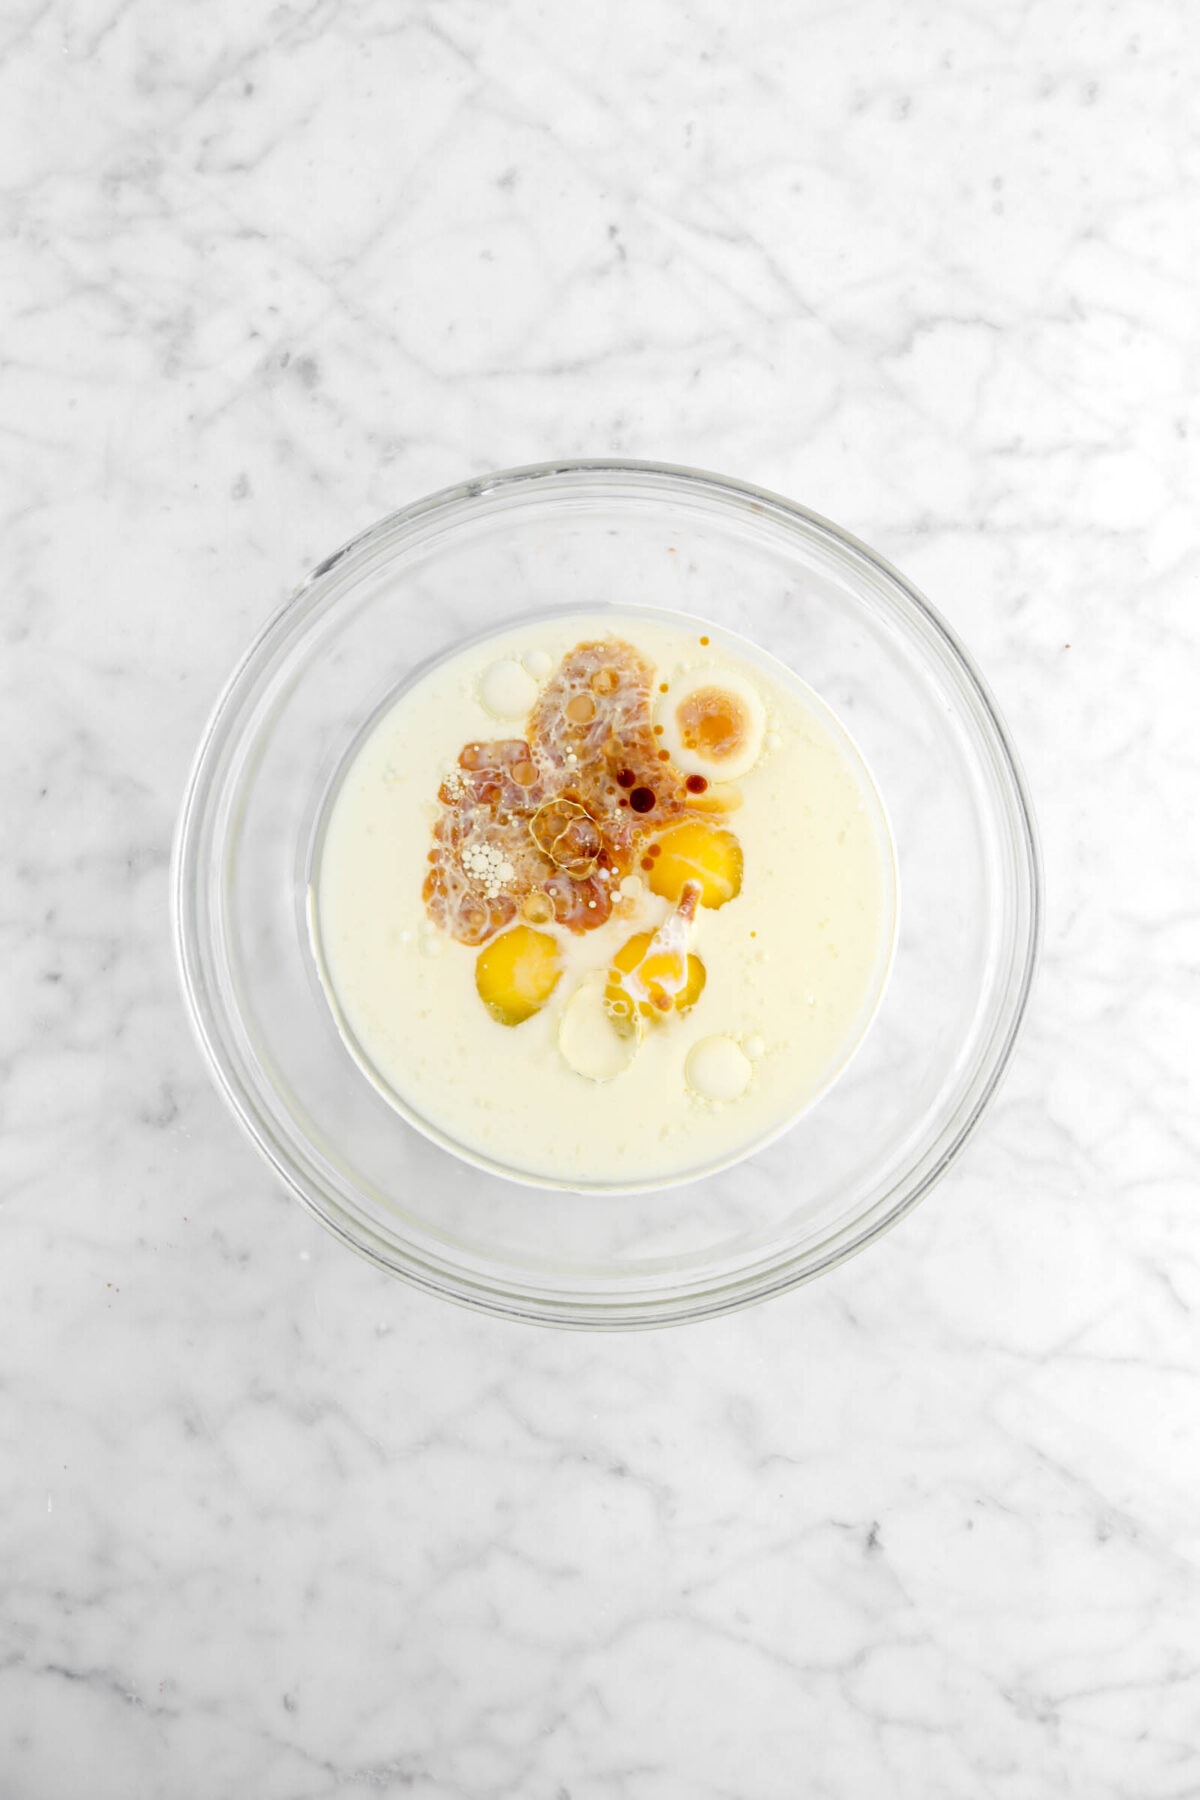 oil, milk, eggs, and vanilla in glass bowl